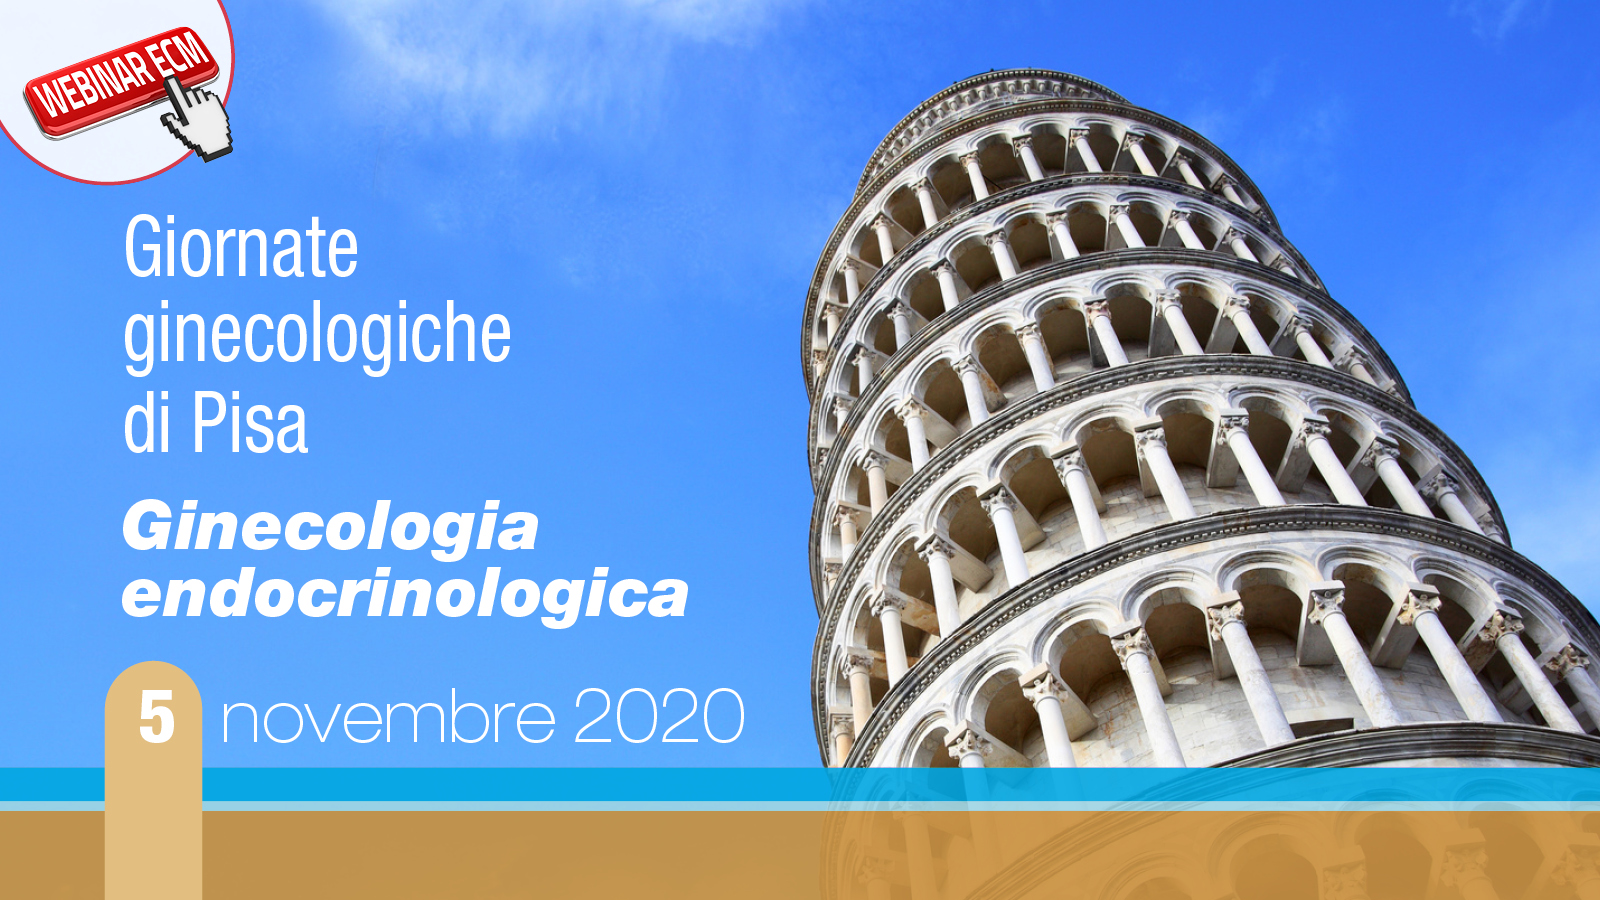 13° Giornata ginecologica di Pisa “Ginecologia endocrinologica”